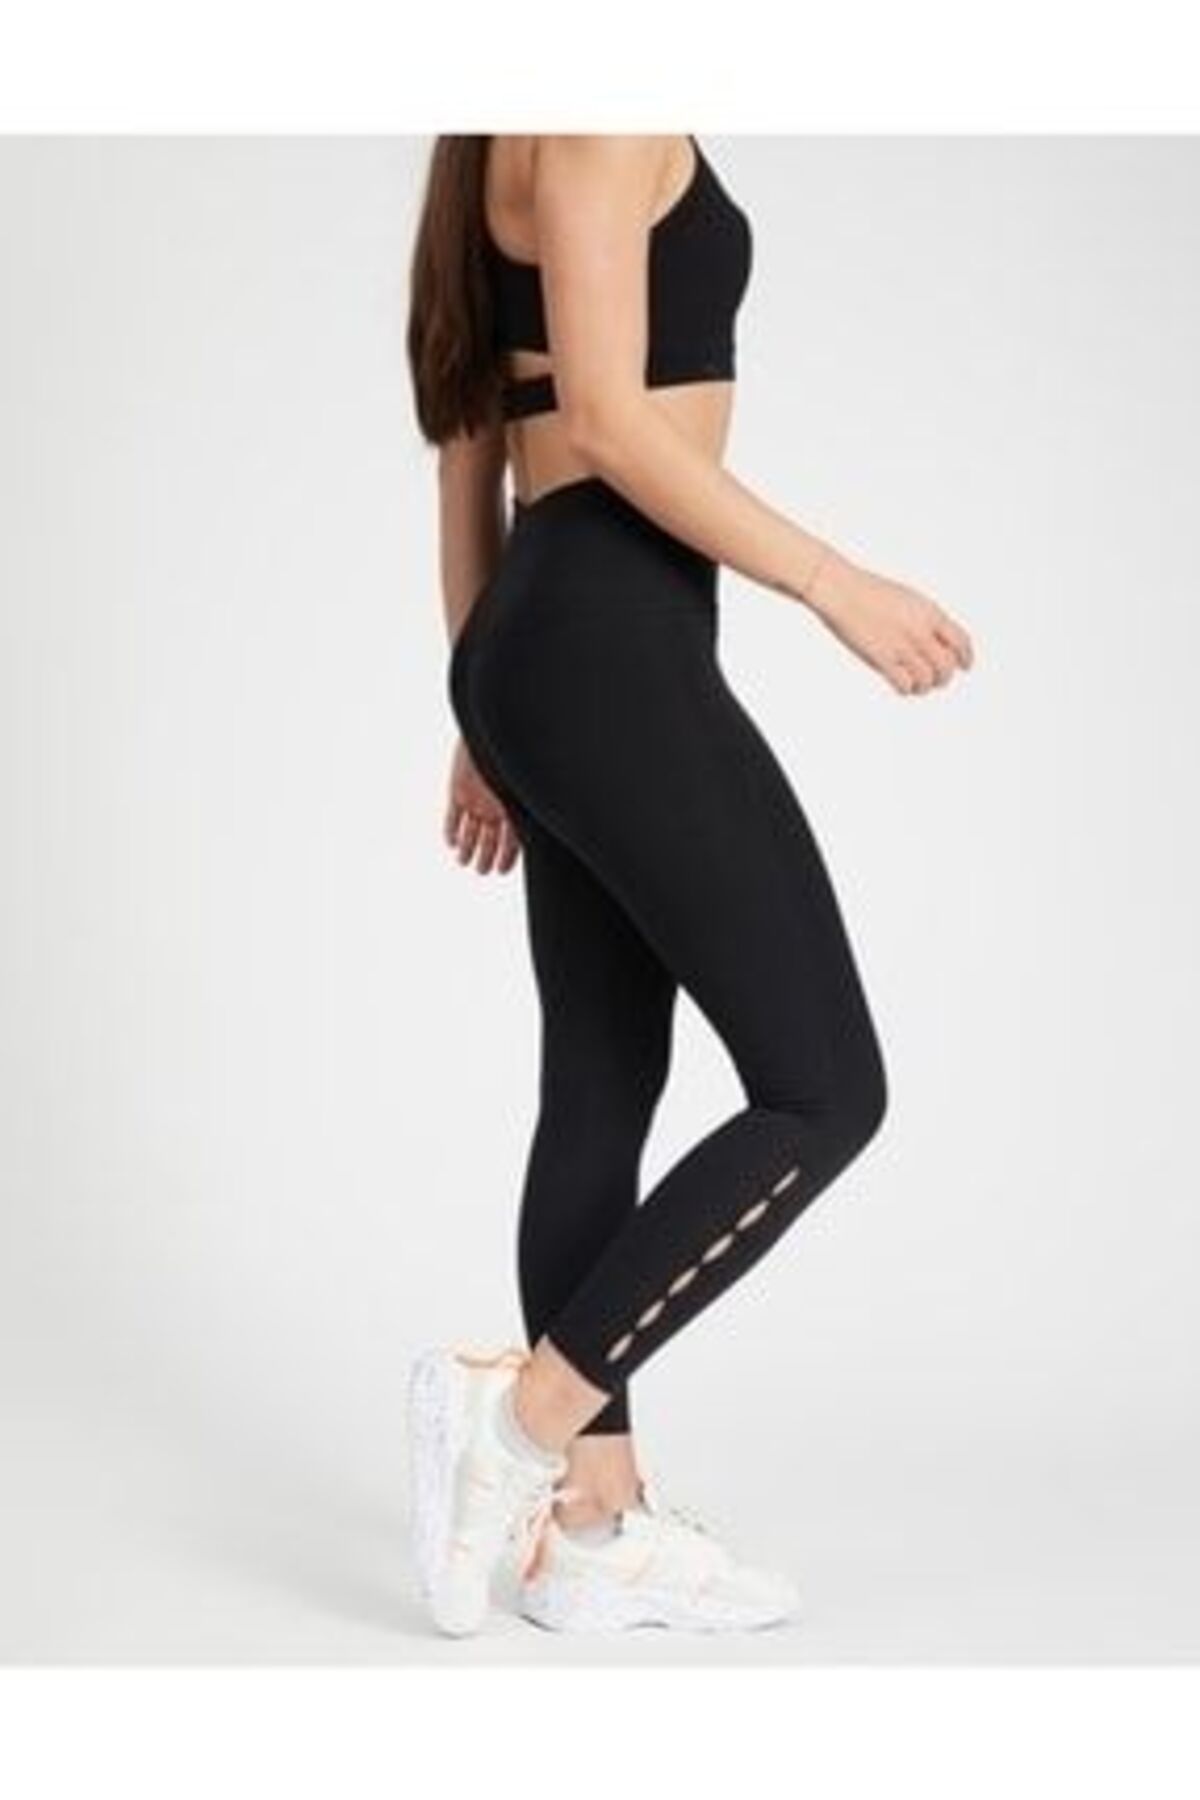 Nike Yoga Dri-fit High Kadın Tayt Dd5557-010 NIKEDD5557-010